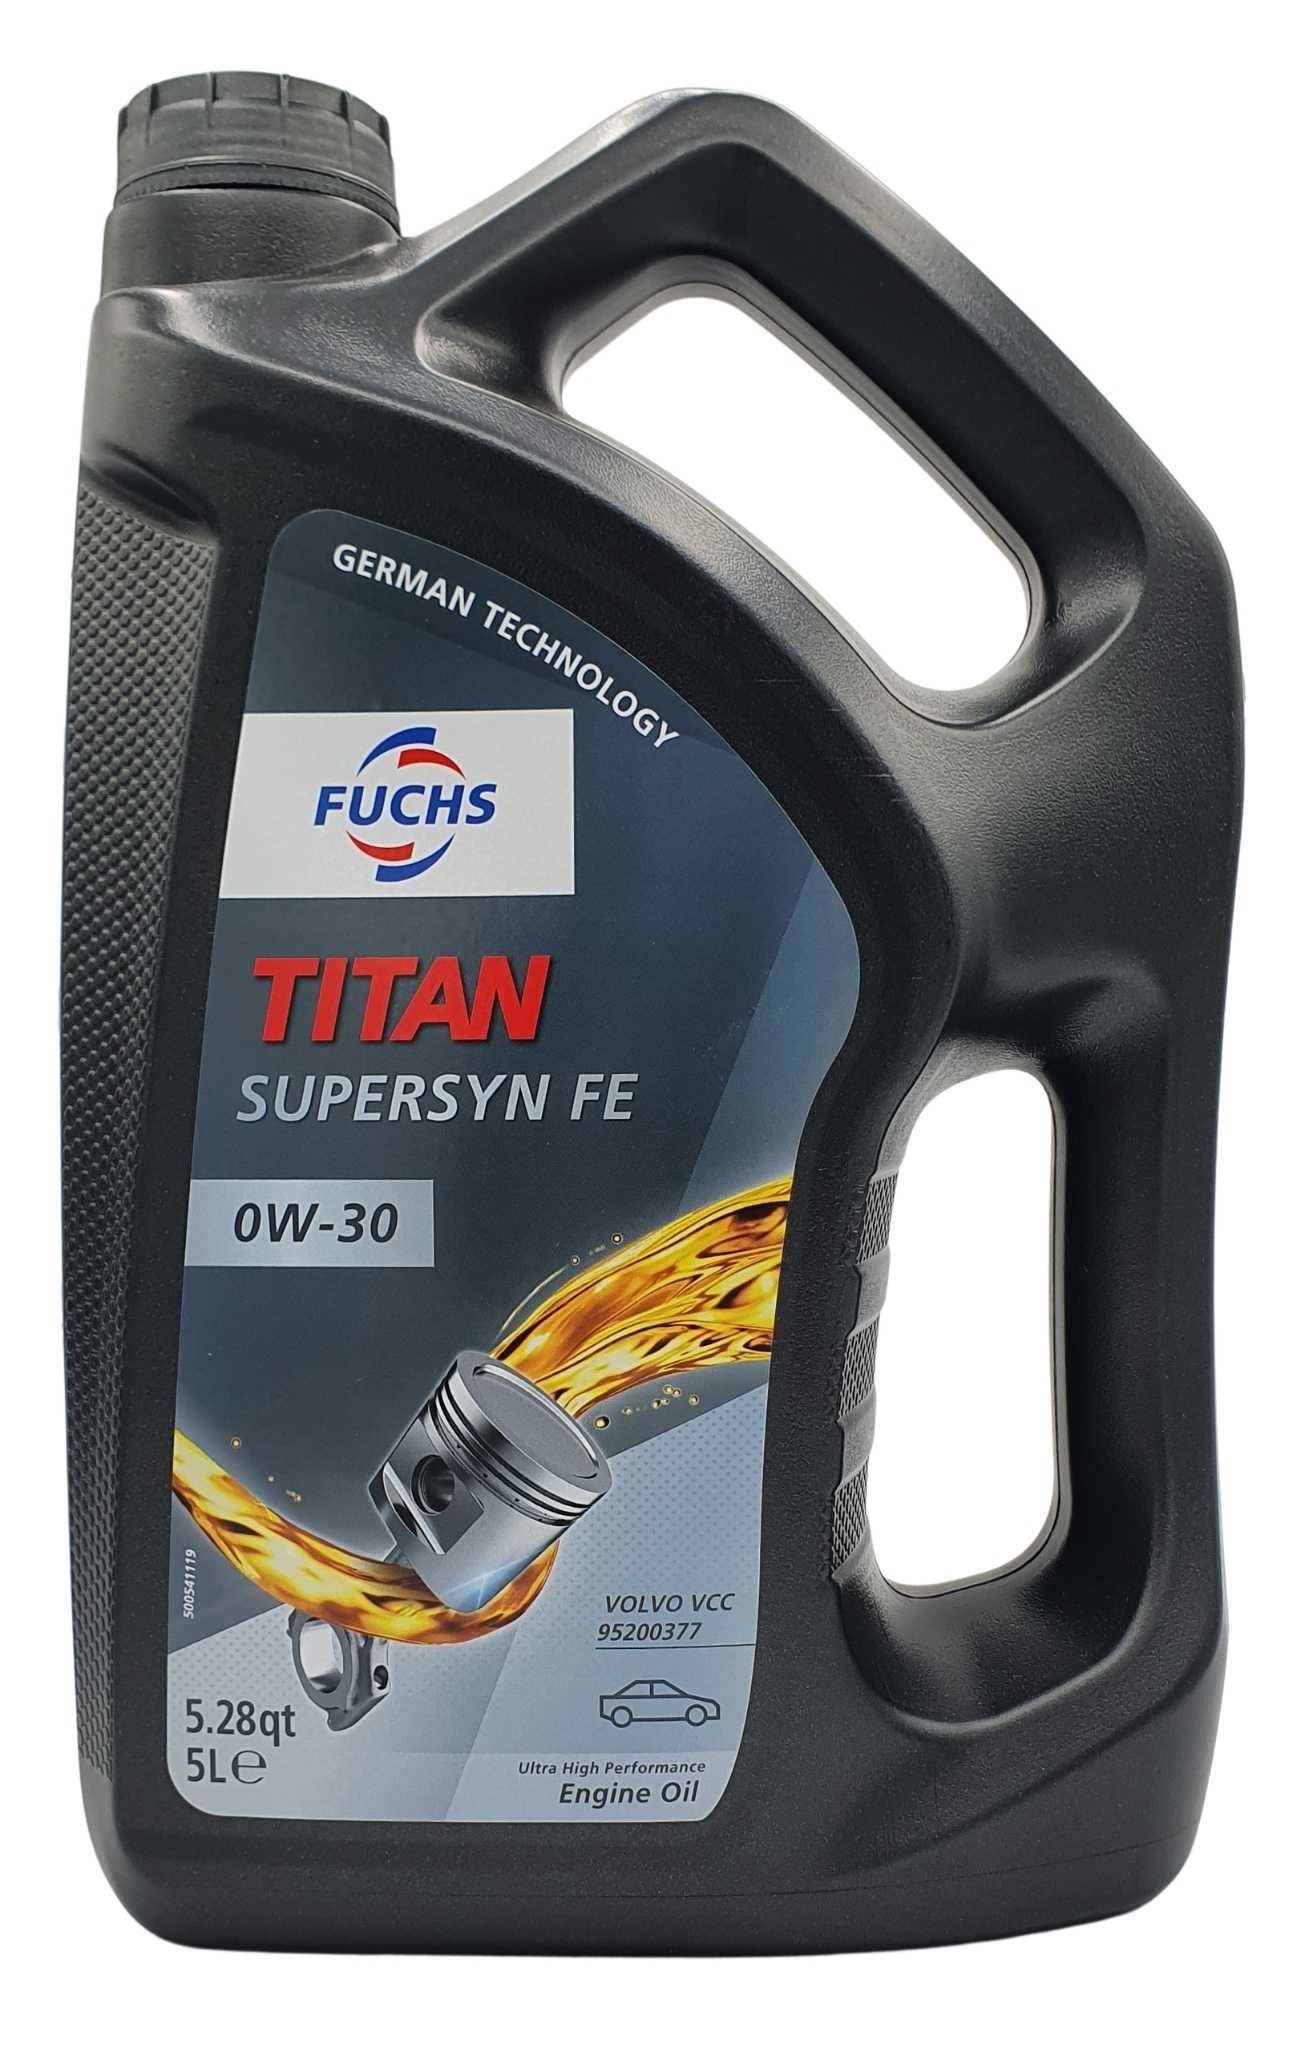 Fuchs Titan Supersyn FE 0W-30 5 Liter